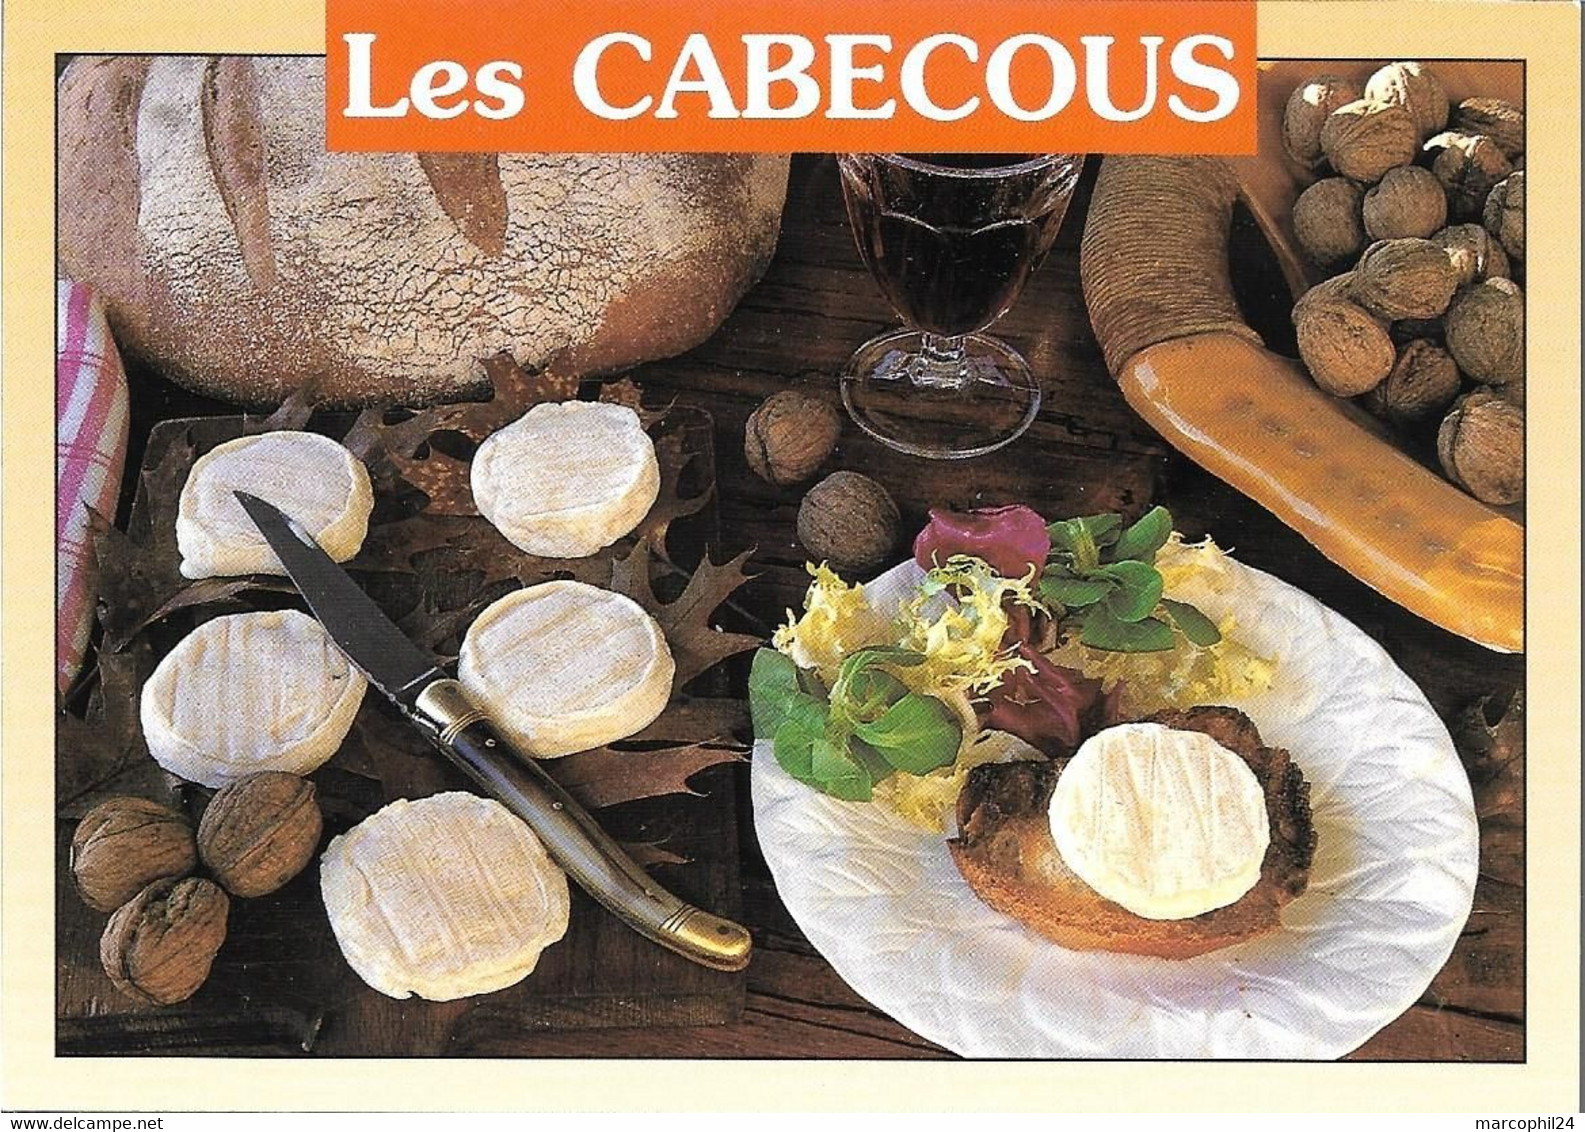 TRADITIONS + Carte Postale Neuve : RECETTE - Les CABECOUS - Fromage De Chèvre + AS DE COEUR 19 44 - Recettes (cuisine)